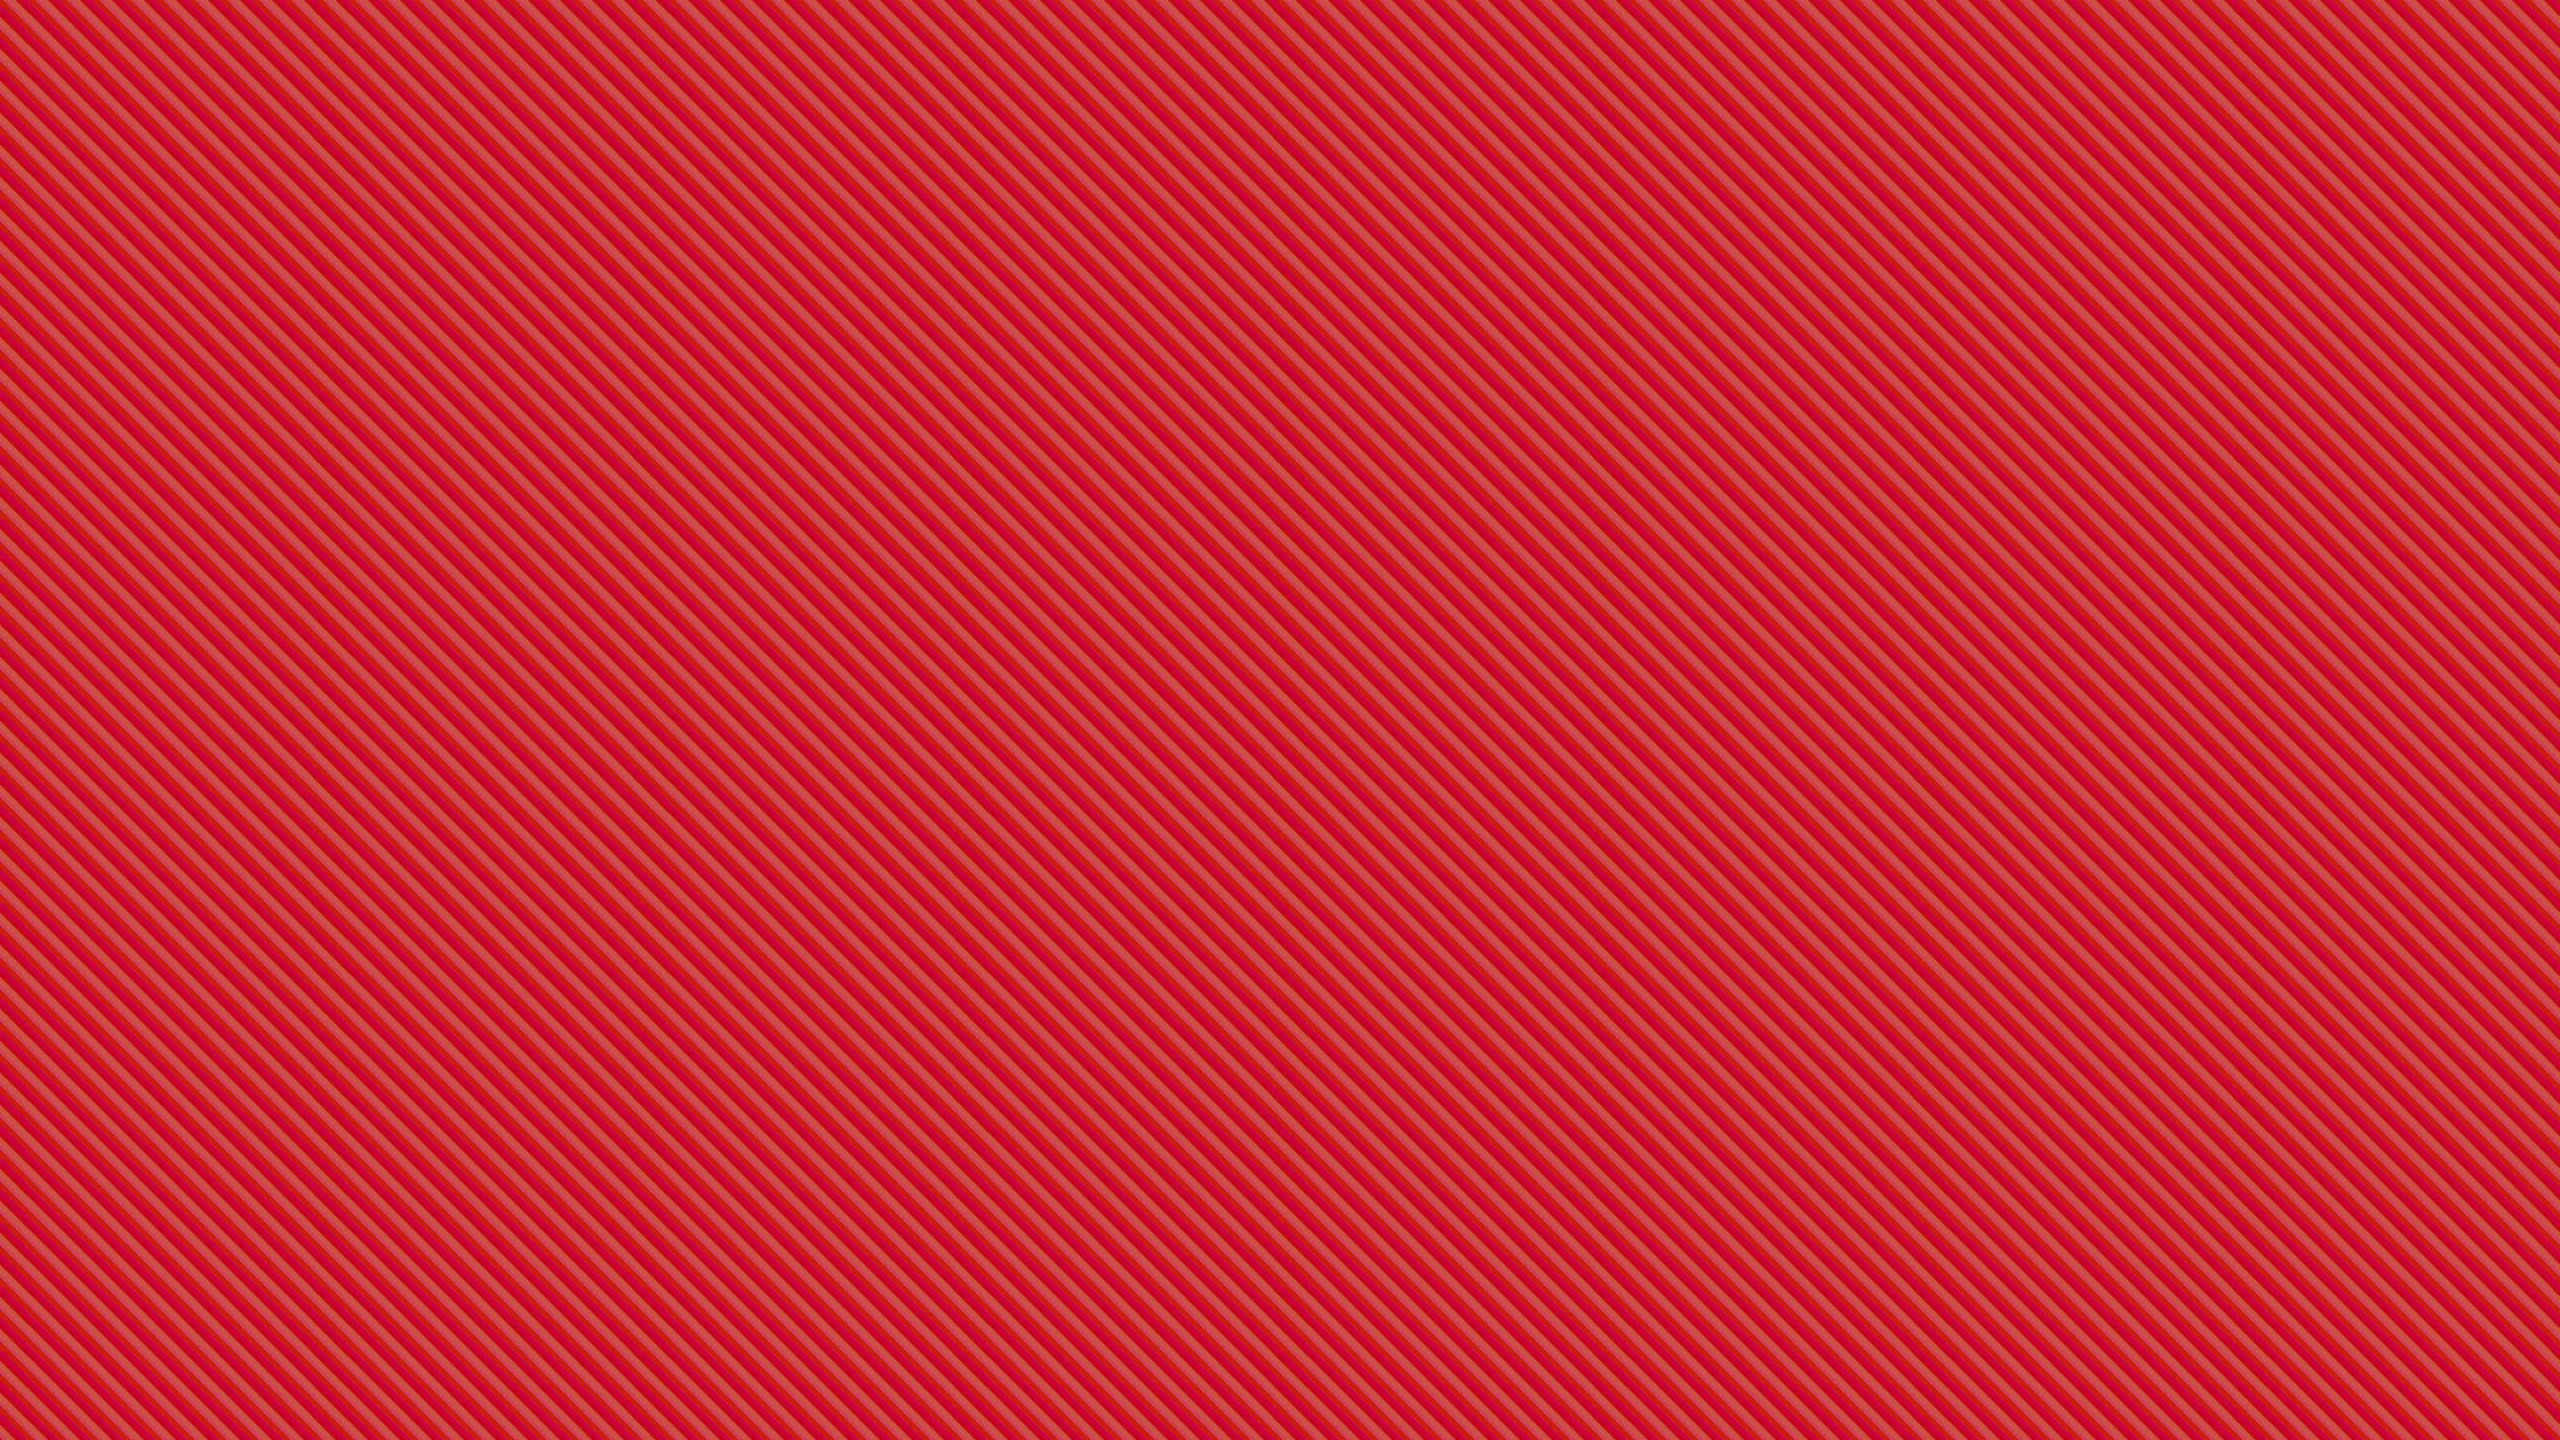 Textil de Rayas Rojas y Blancas. Wallpaper in 2560x1440 Resolution